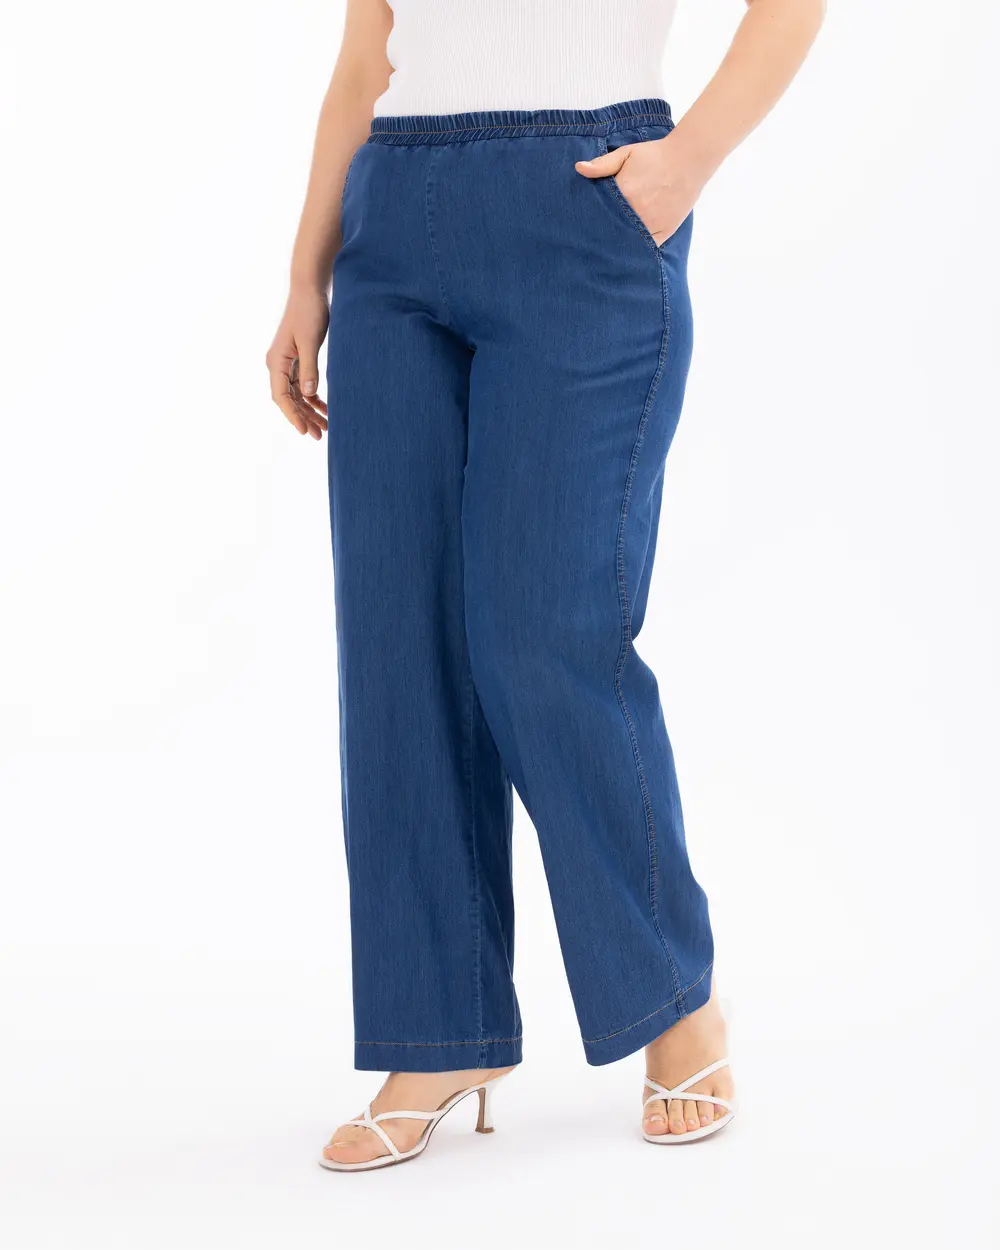 Plus Size Elastic Waist Jean Pants